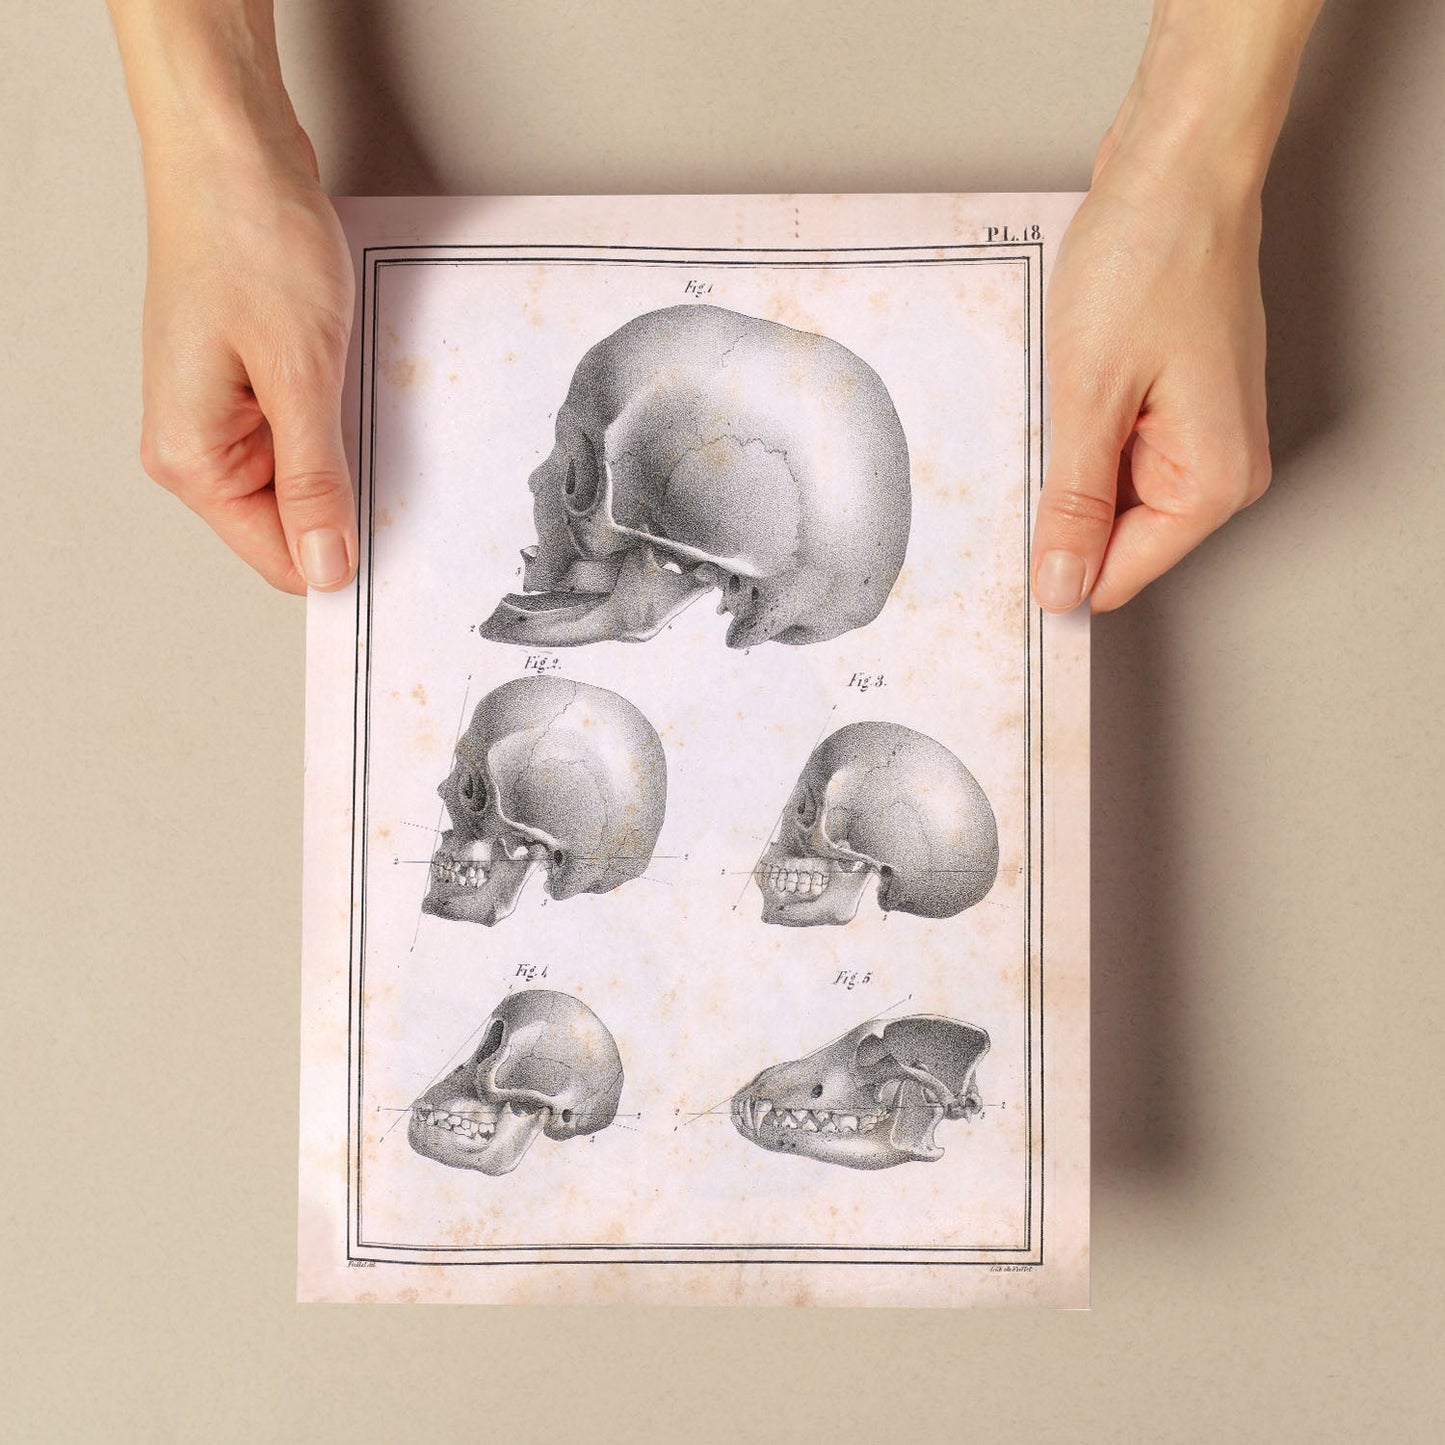 Paillou Skulls; geriatric, caucasiod and negroid adult, orangutan, and dog-Artwork-Nacnic-Nacnic Estudio SL